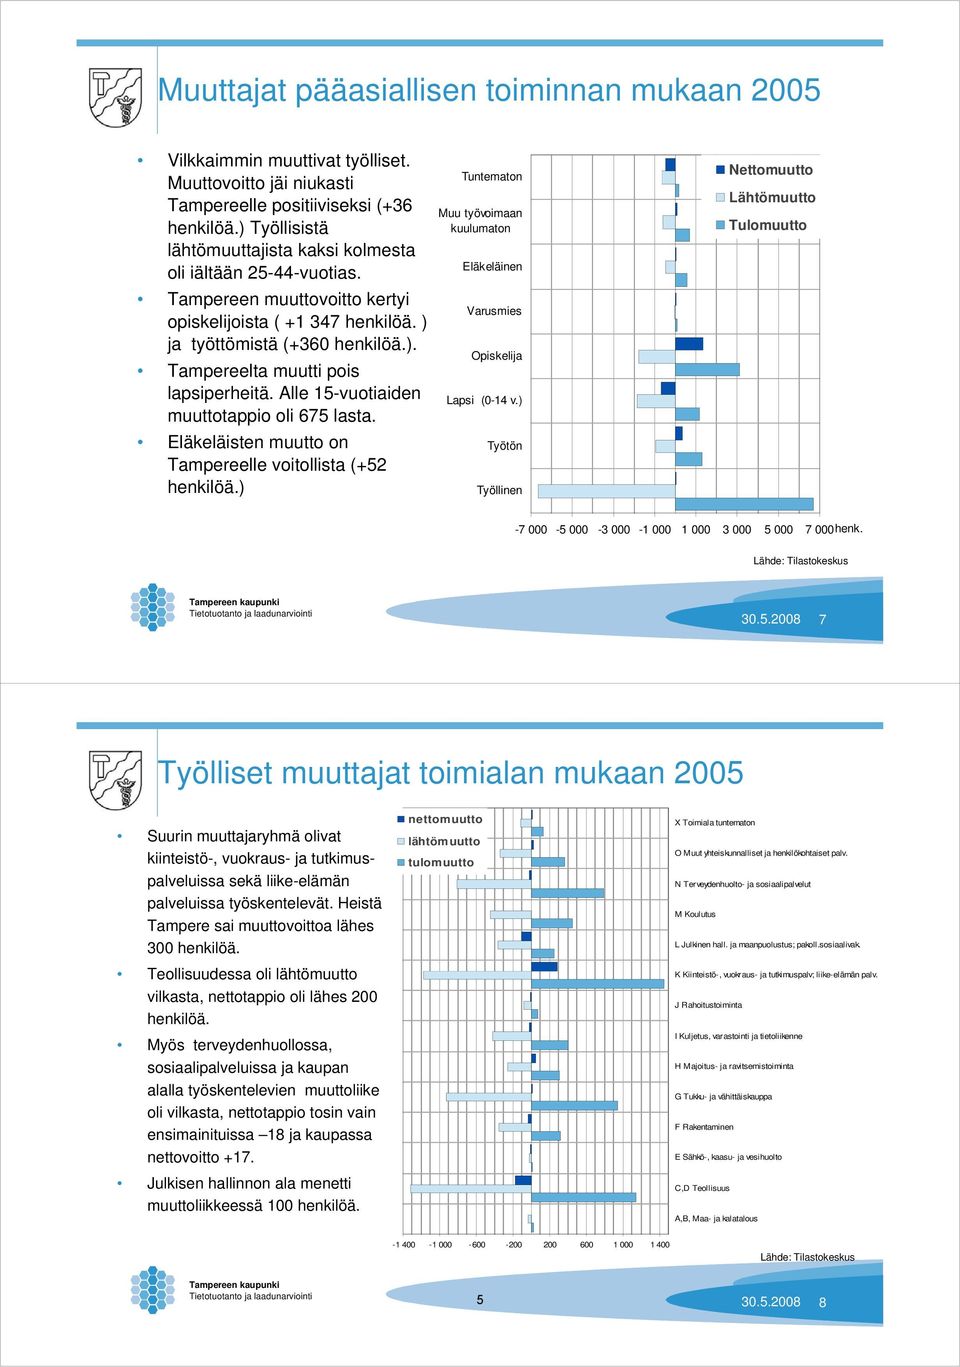 Alle 15-vuotiaiden muuttotappio oli 675 lasta. Eläkeläisten muutto on Tampereelle voitollista (+52 henkilöä.) Tuntematon Muu työvoimaan kuulumaton Eläkeläinen Varusmies Opiskelija Lapsi (0-14 v.